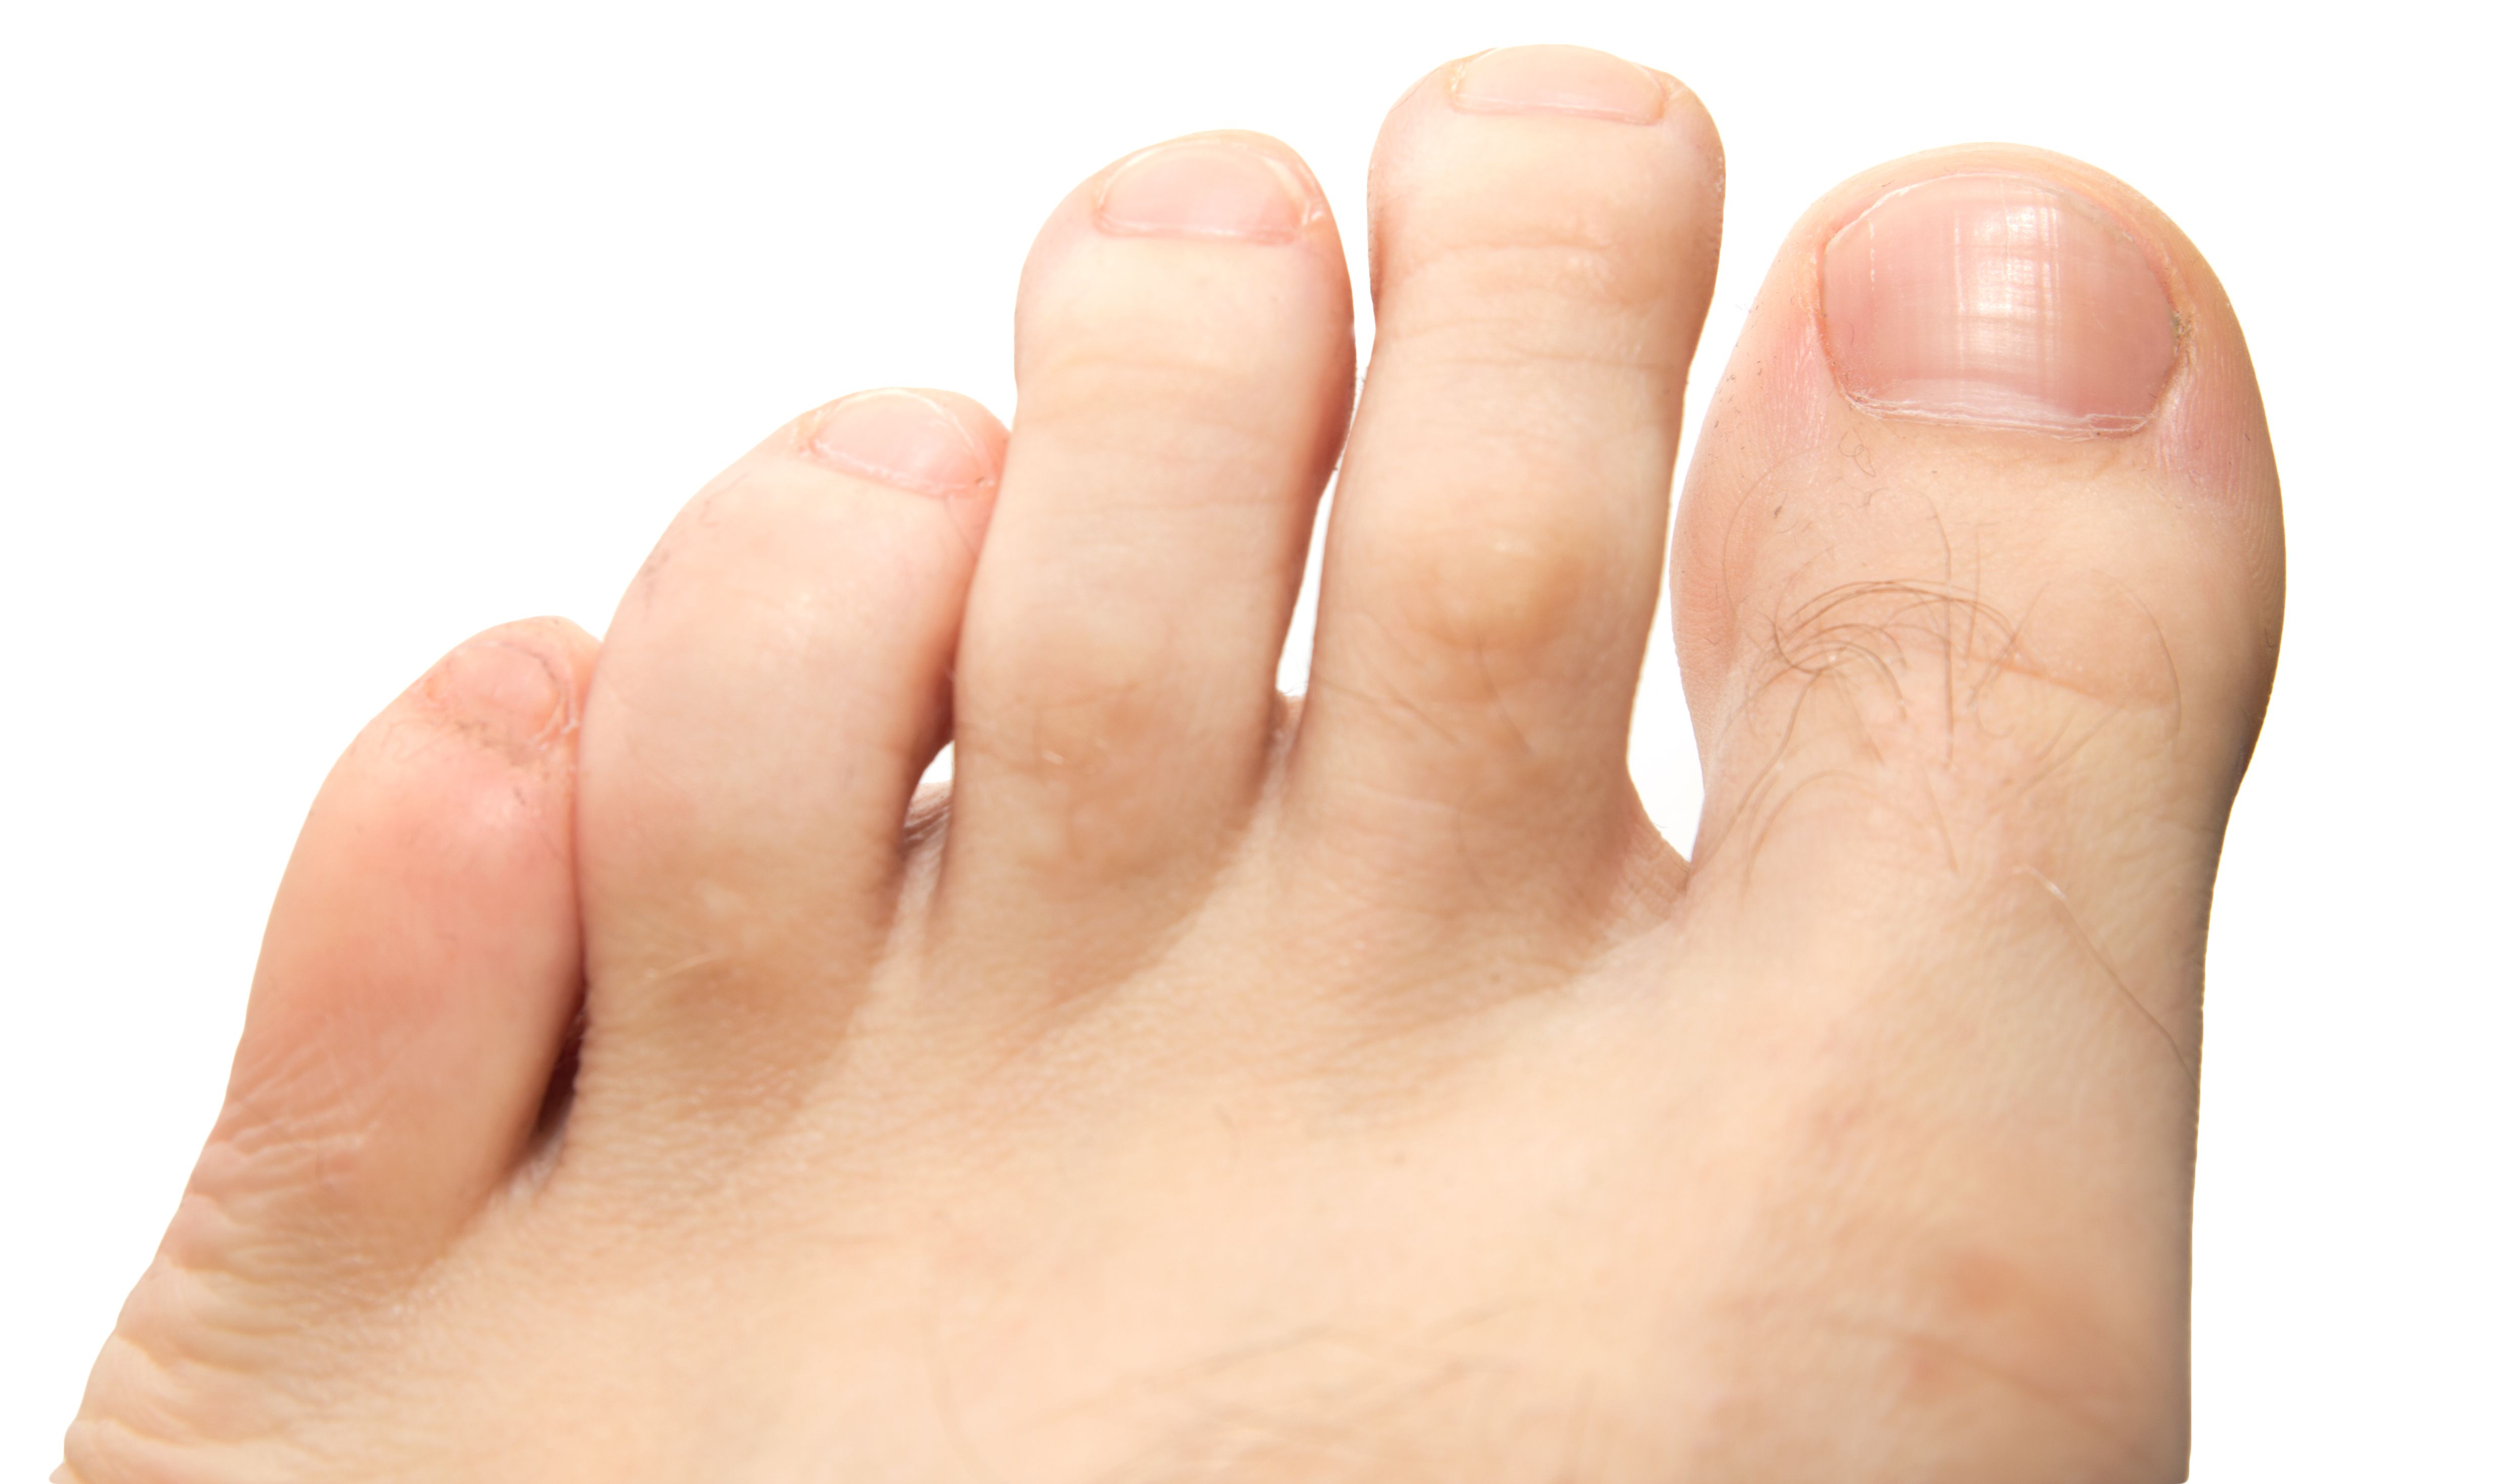 Warts on your foot, Duofilm salicylic acid wart remover liquid, oz | Fruugo NO